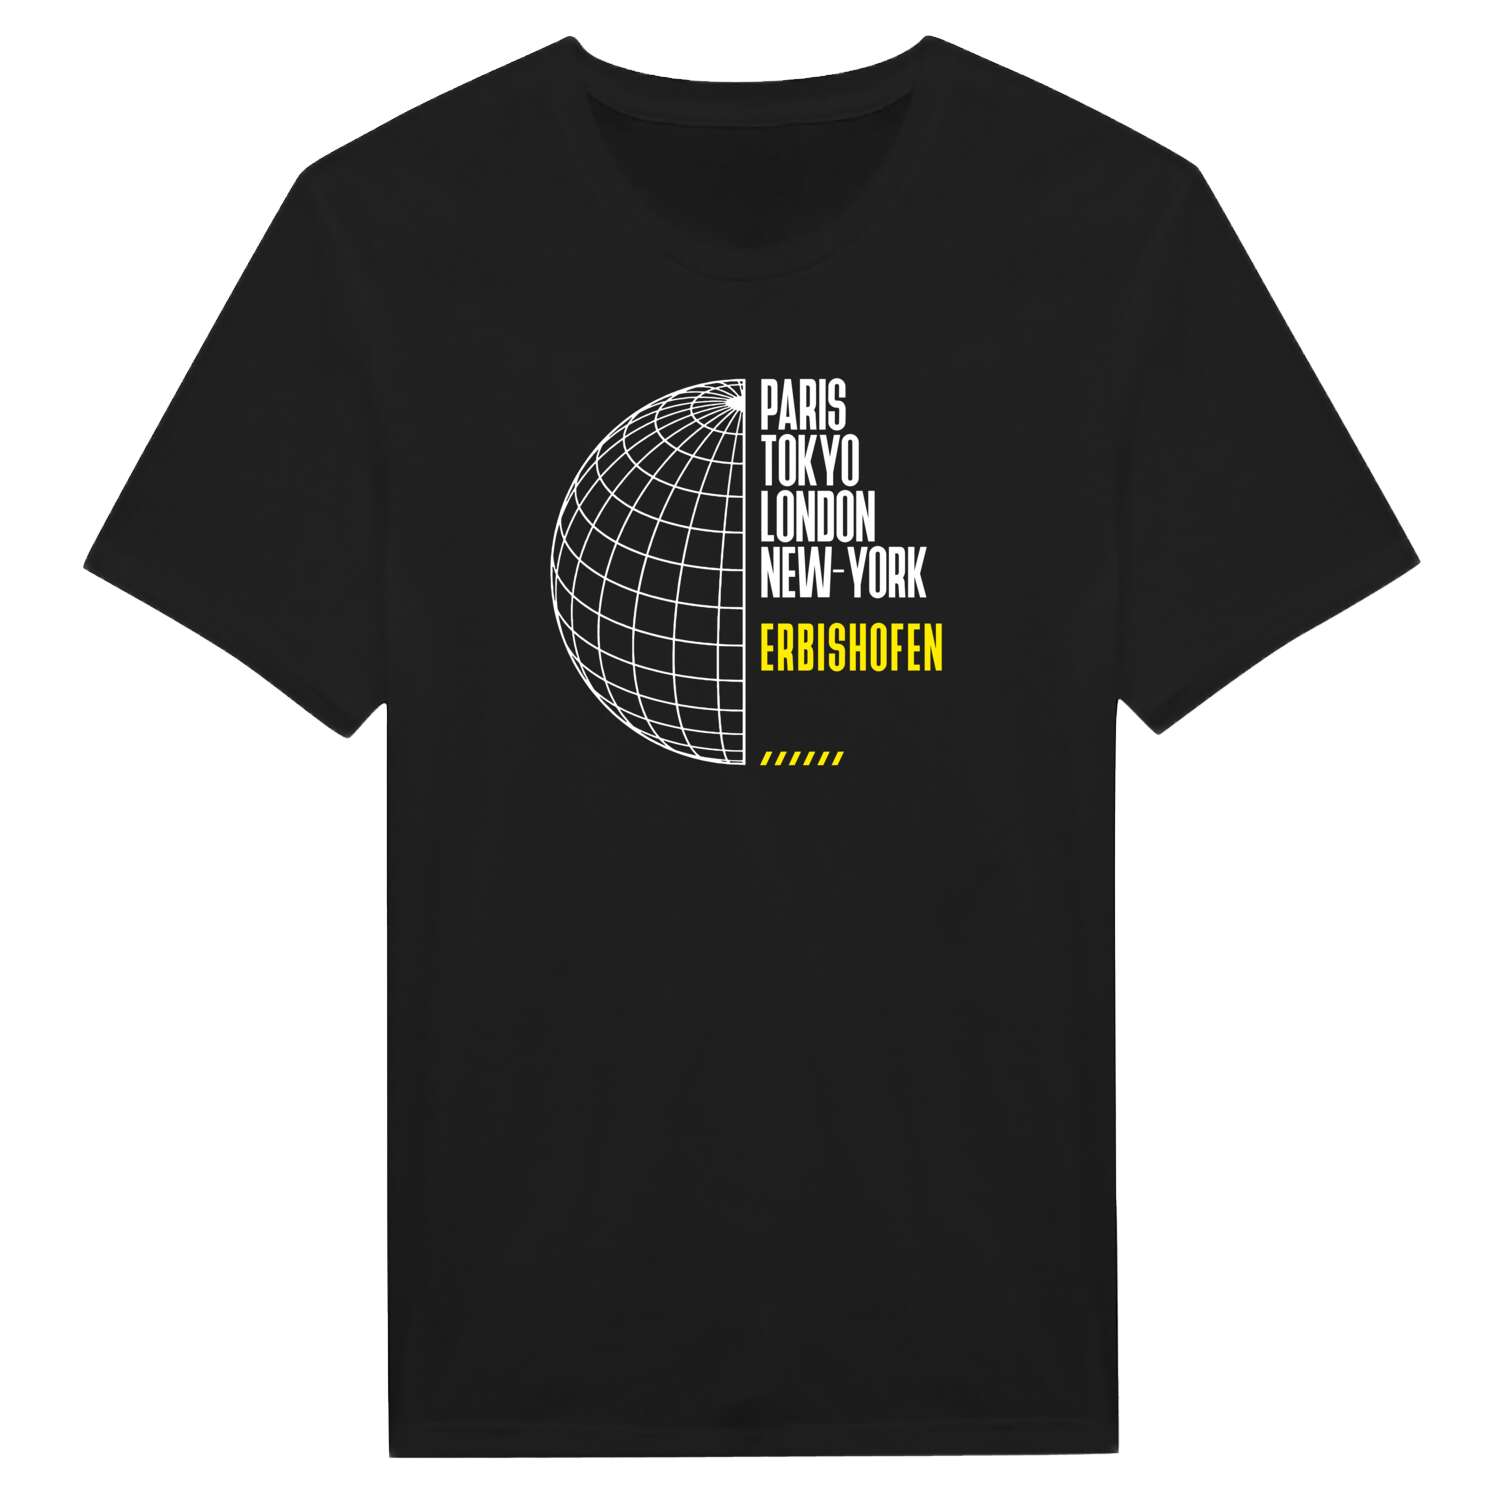 Erbishofen T-Shirt »Paris Tokyo London«